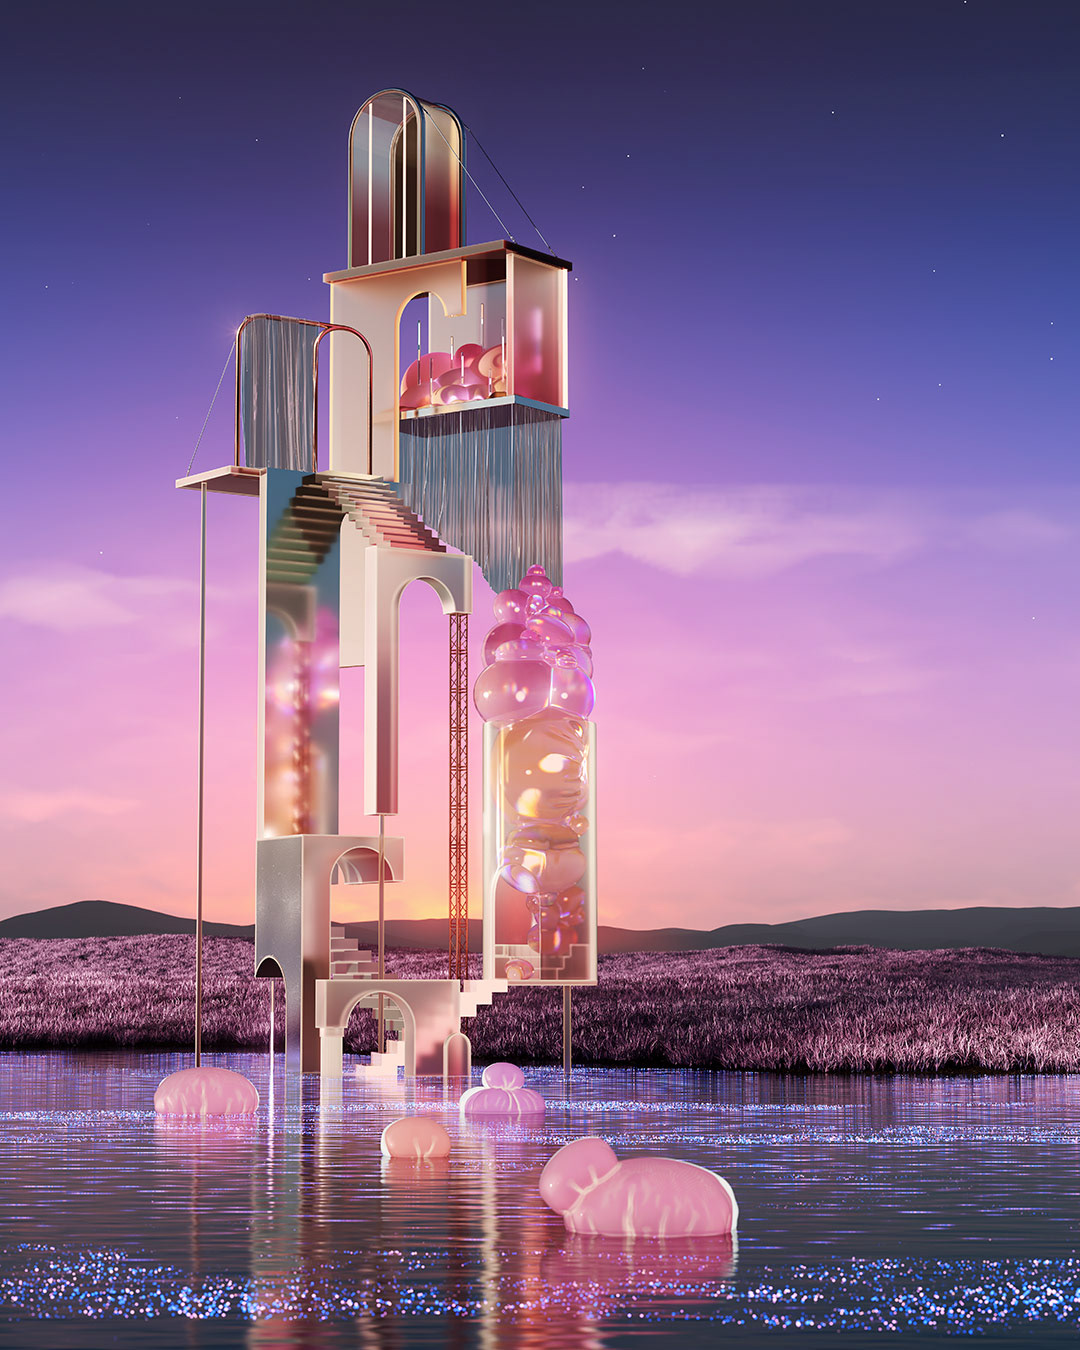 3D CGI architecture visualization Render interior design  Landscape dreamscape surreal fantasy